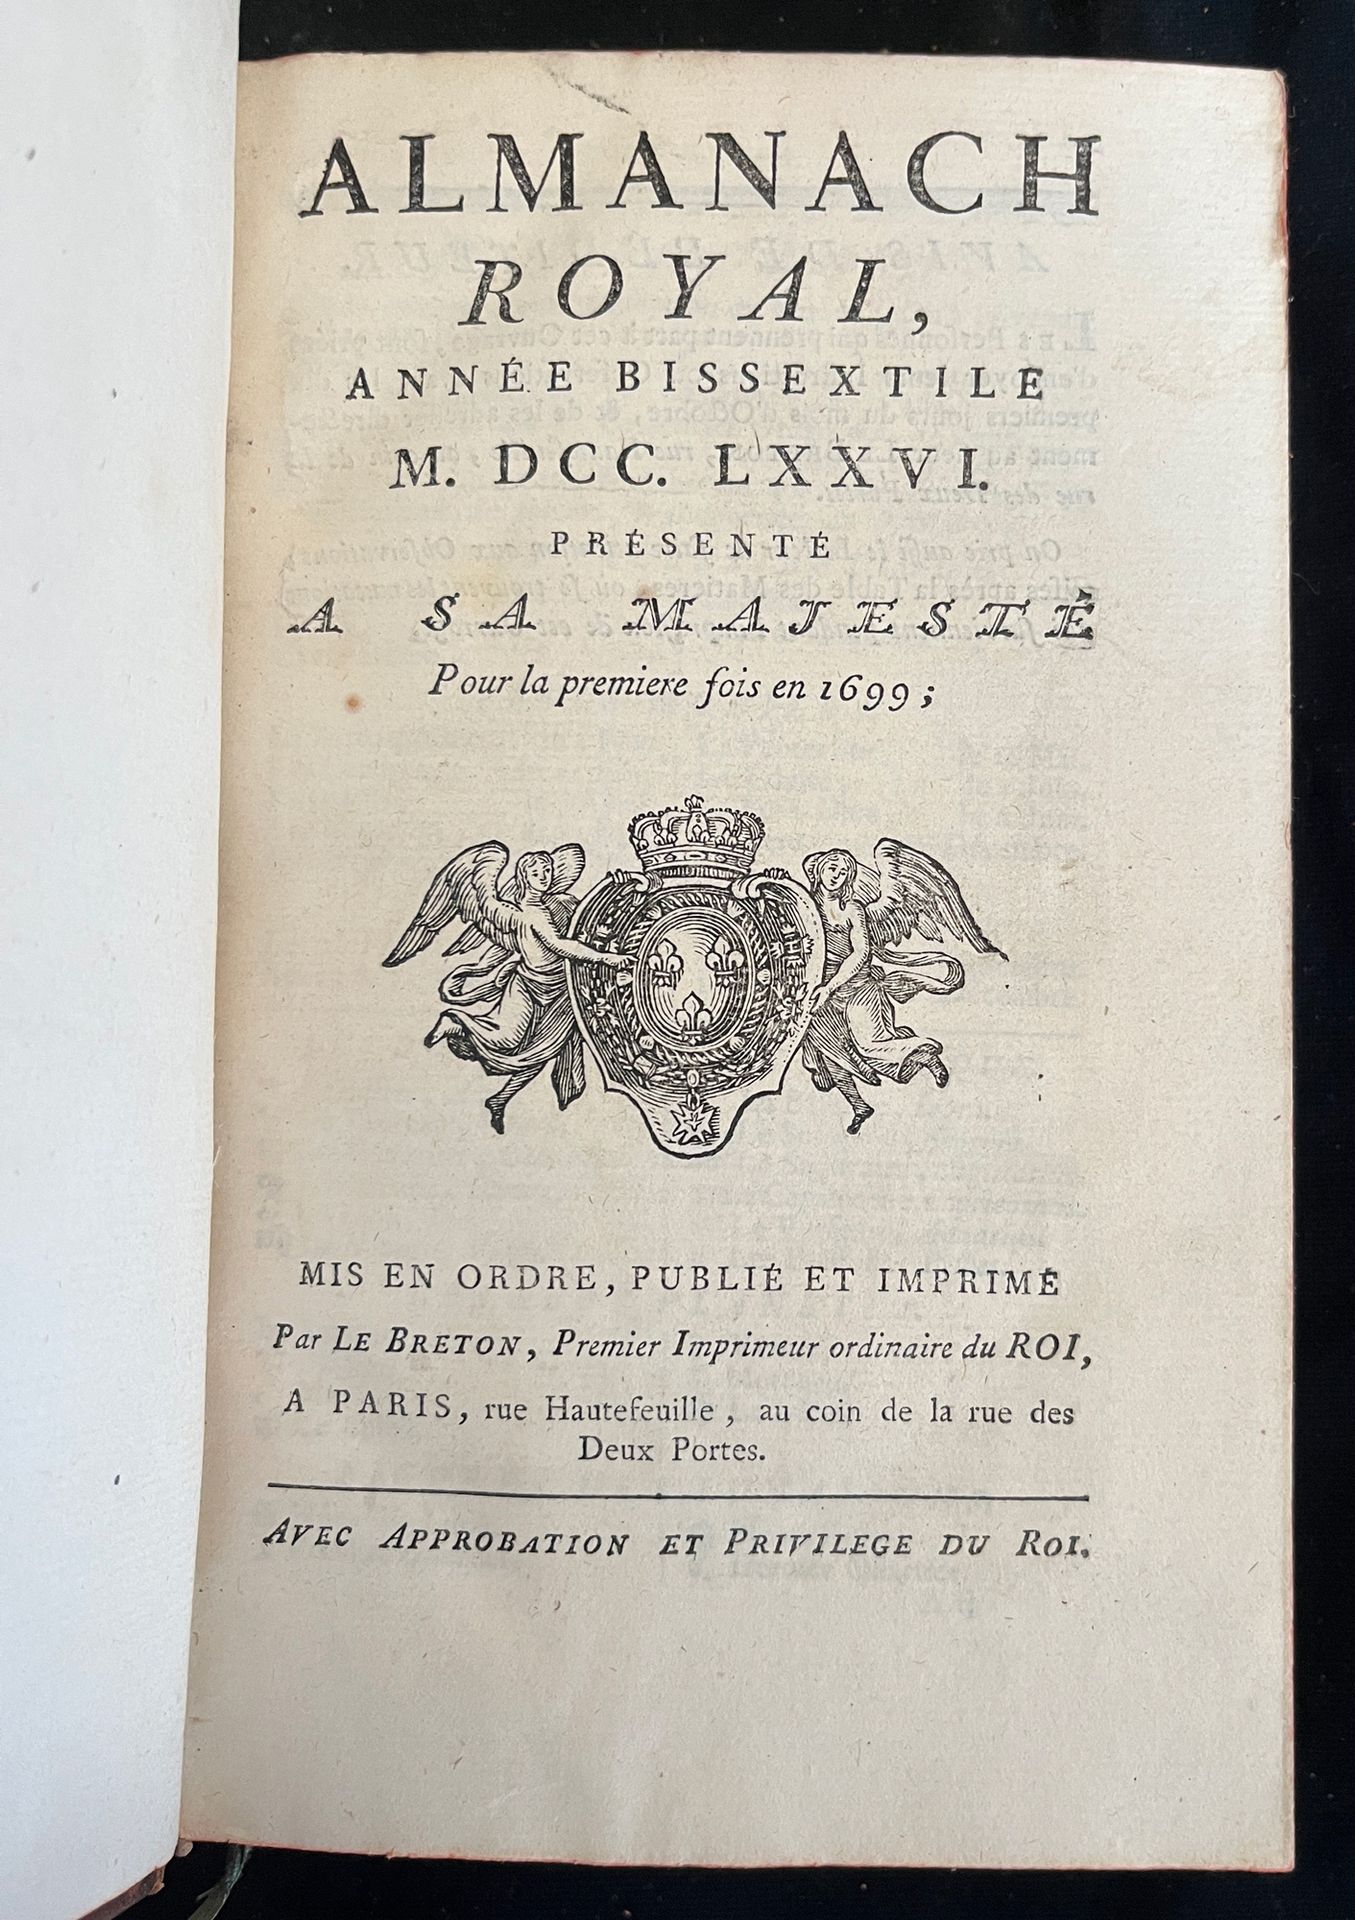 Null [ALMANACH]
Almanach royal pour l'an bissextile MDCCLXXVI. Paris, chez Le br&hellip;